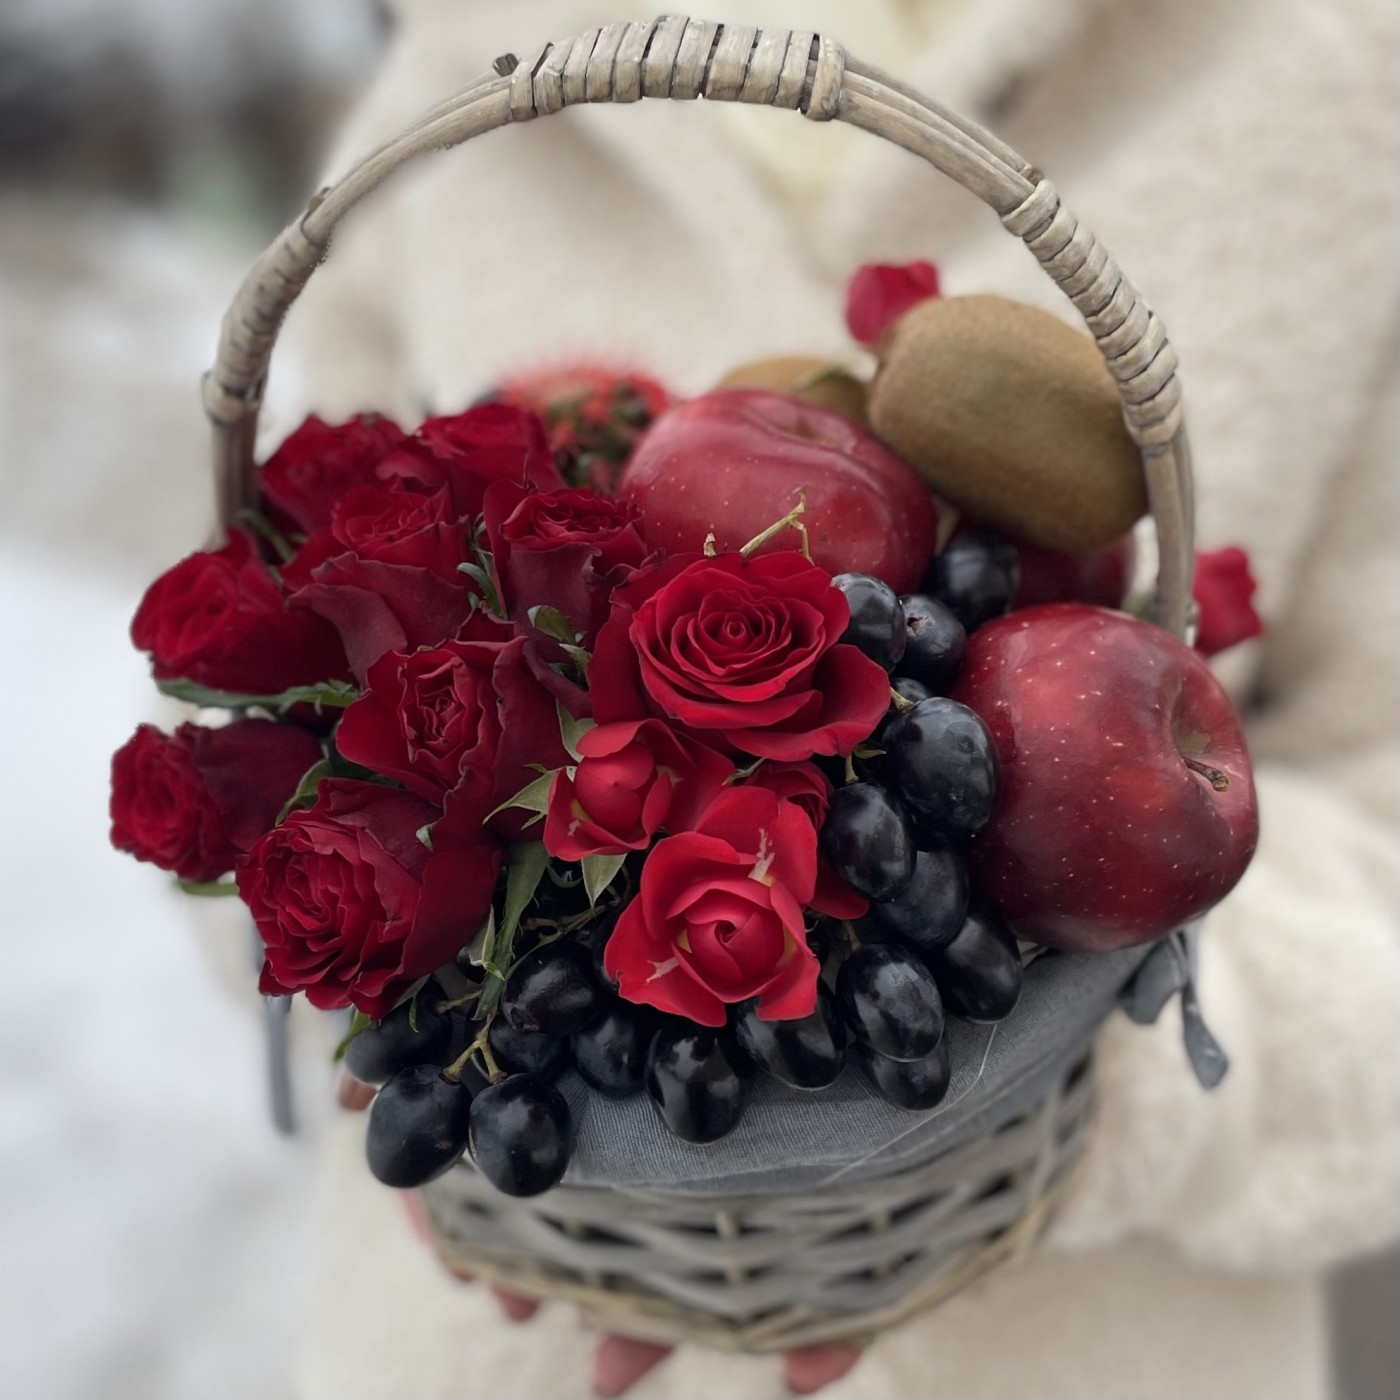 Фруктовая корзина в красном цвете с розами и кактусом